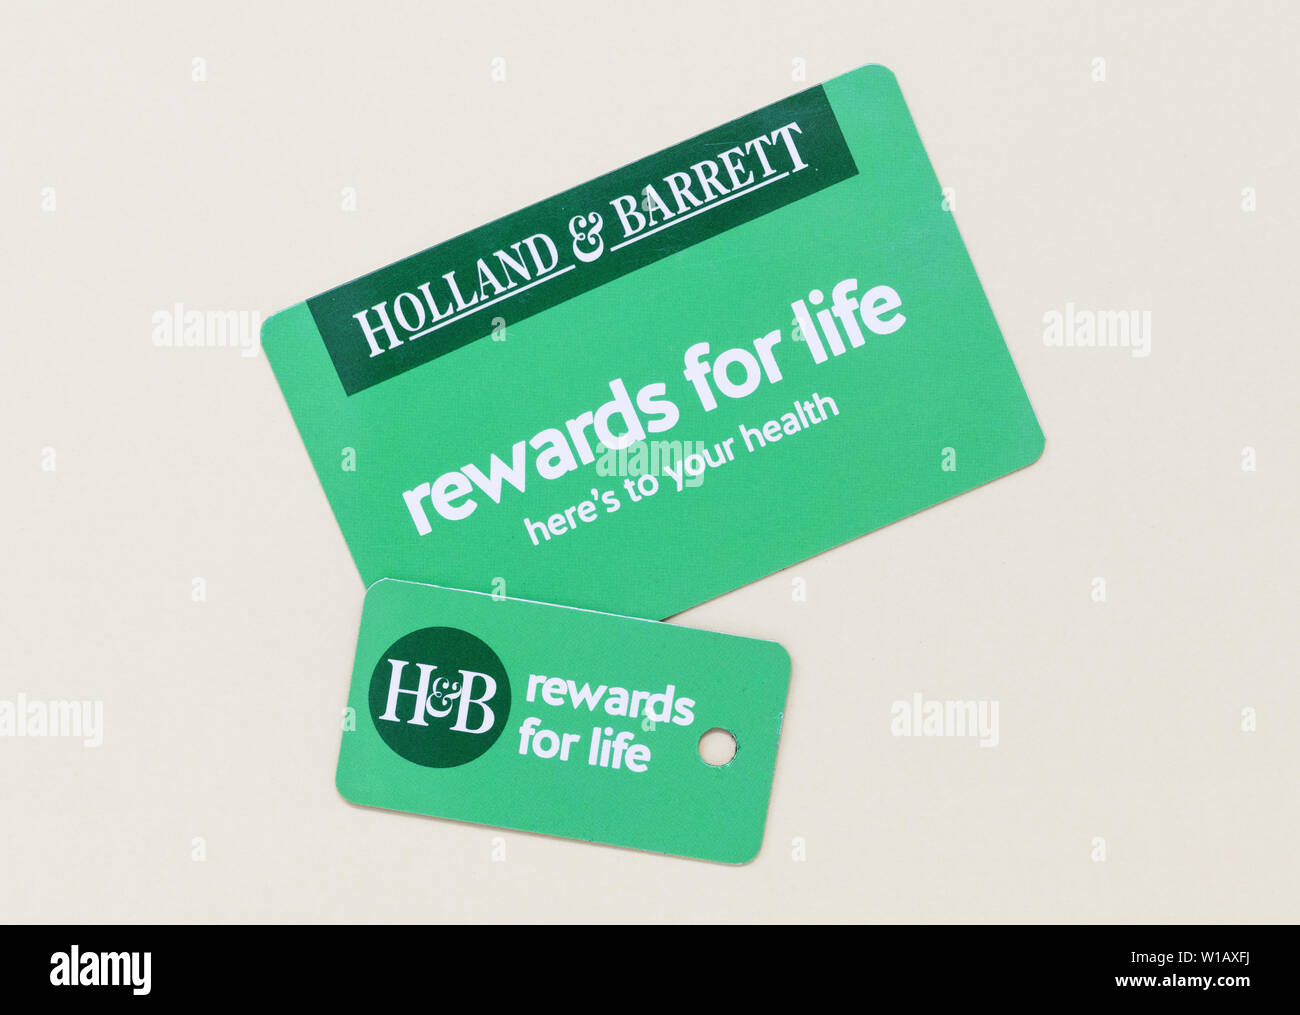 London/UK - 1. Juli 2019 - Holland und Barrett kunden Bonuskarte und Schlüsselanhänger. Holland & Barrett ist eine Kette von Naturkostläden mit über 1.300 Stockfoto